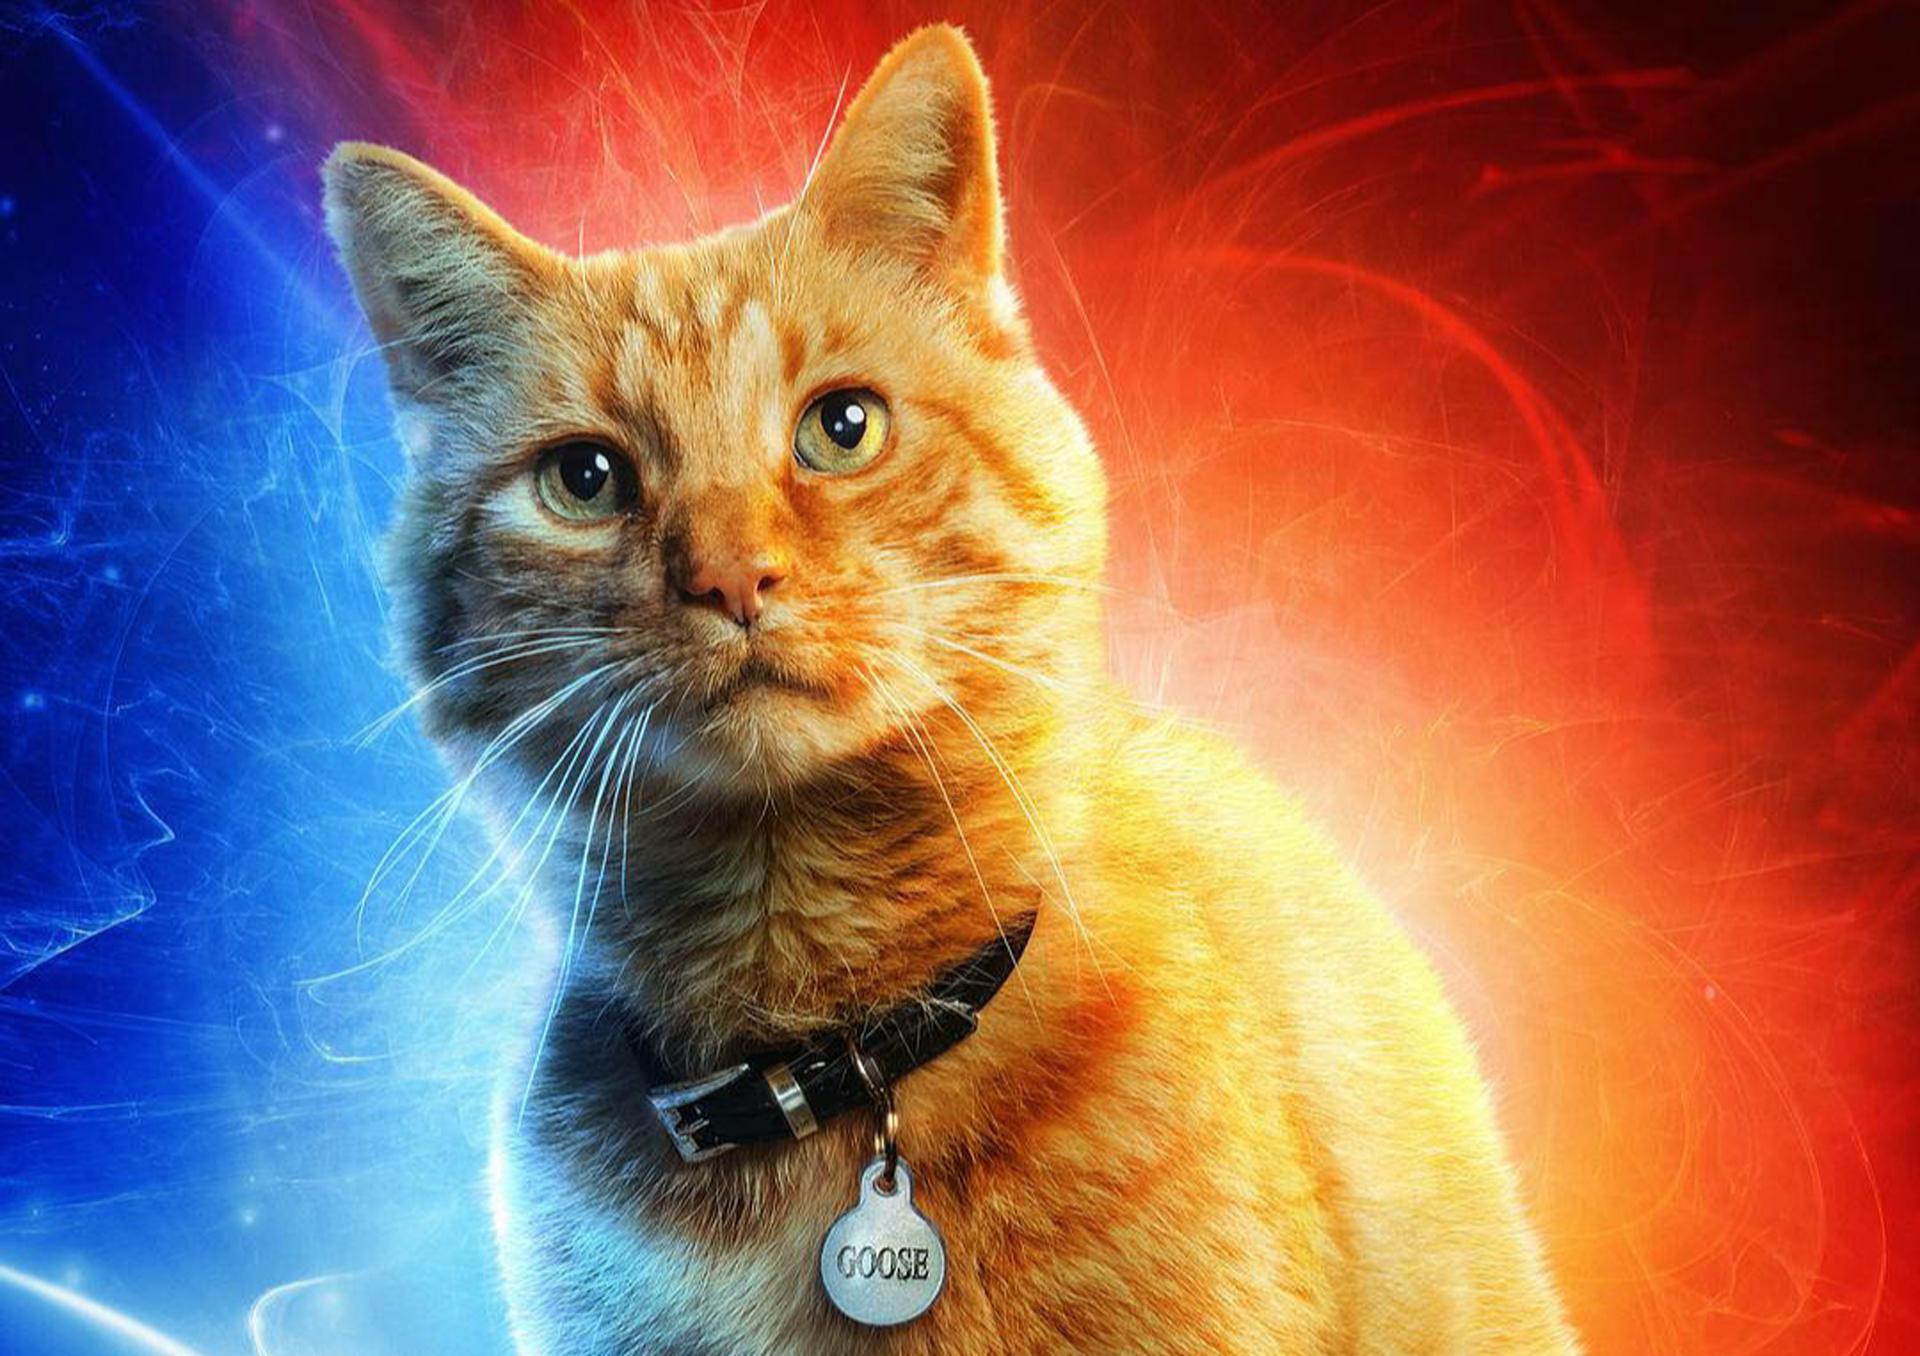 《惊奇队长》试映口碑优秀,有致敬斯坦李的镜头,橘猫成"新宠"